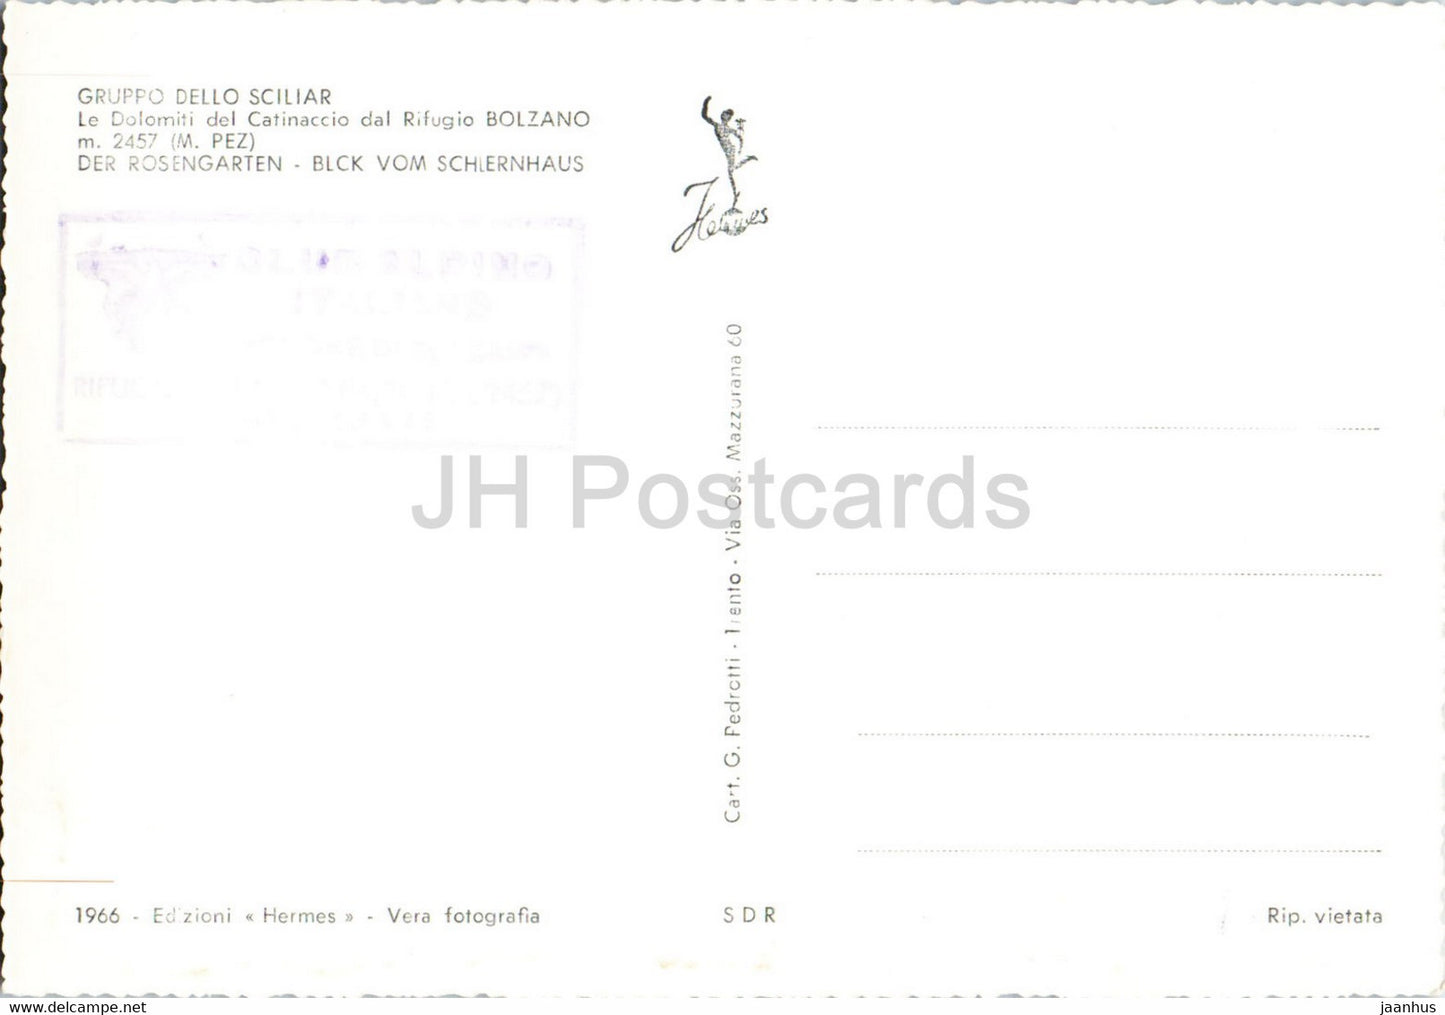 Gruppo Dello Sciliar - Rosengarten - Rifugio Bozen - Italien - alte Postkarte - unbenutzt